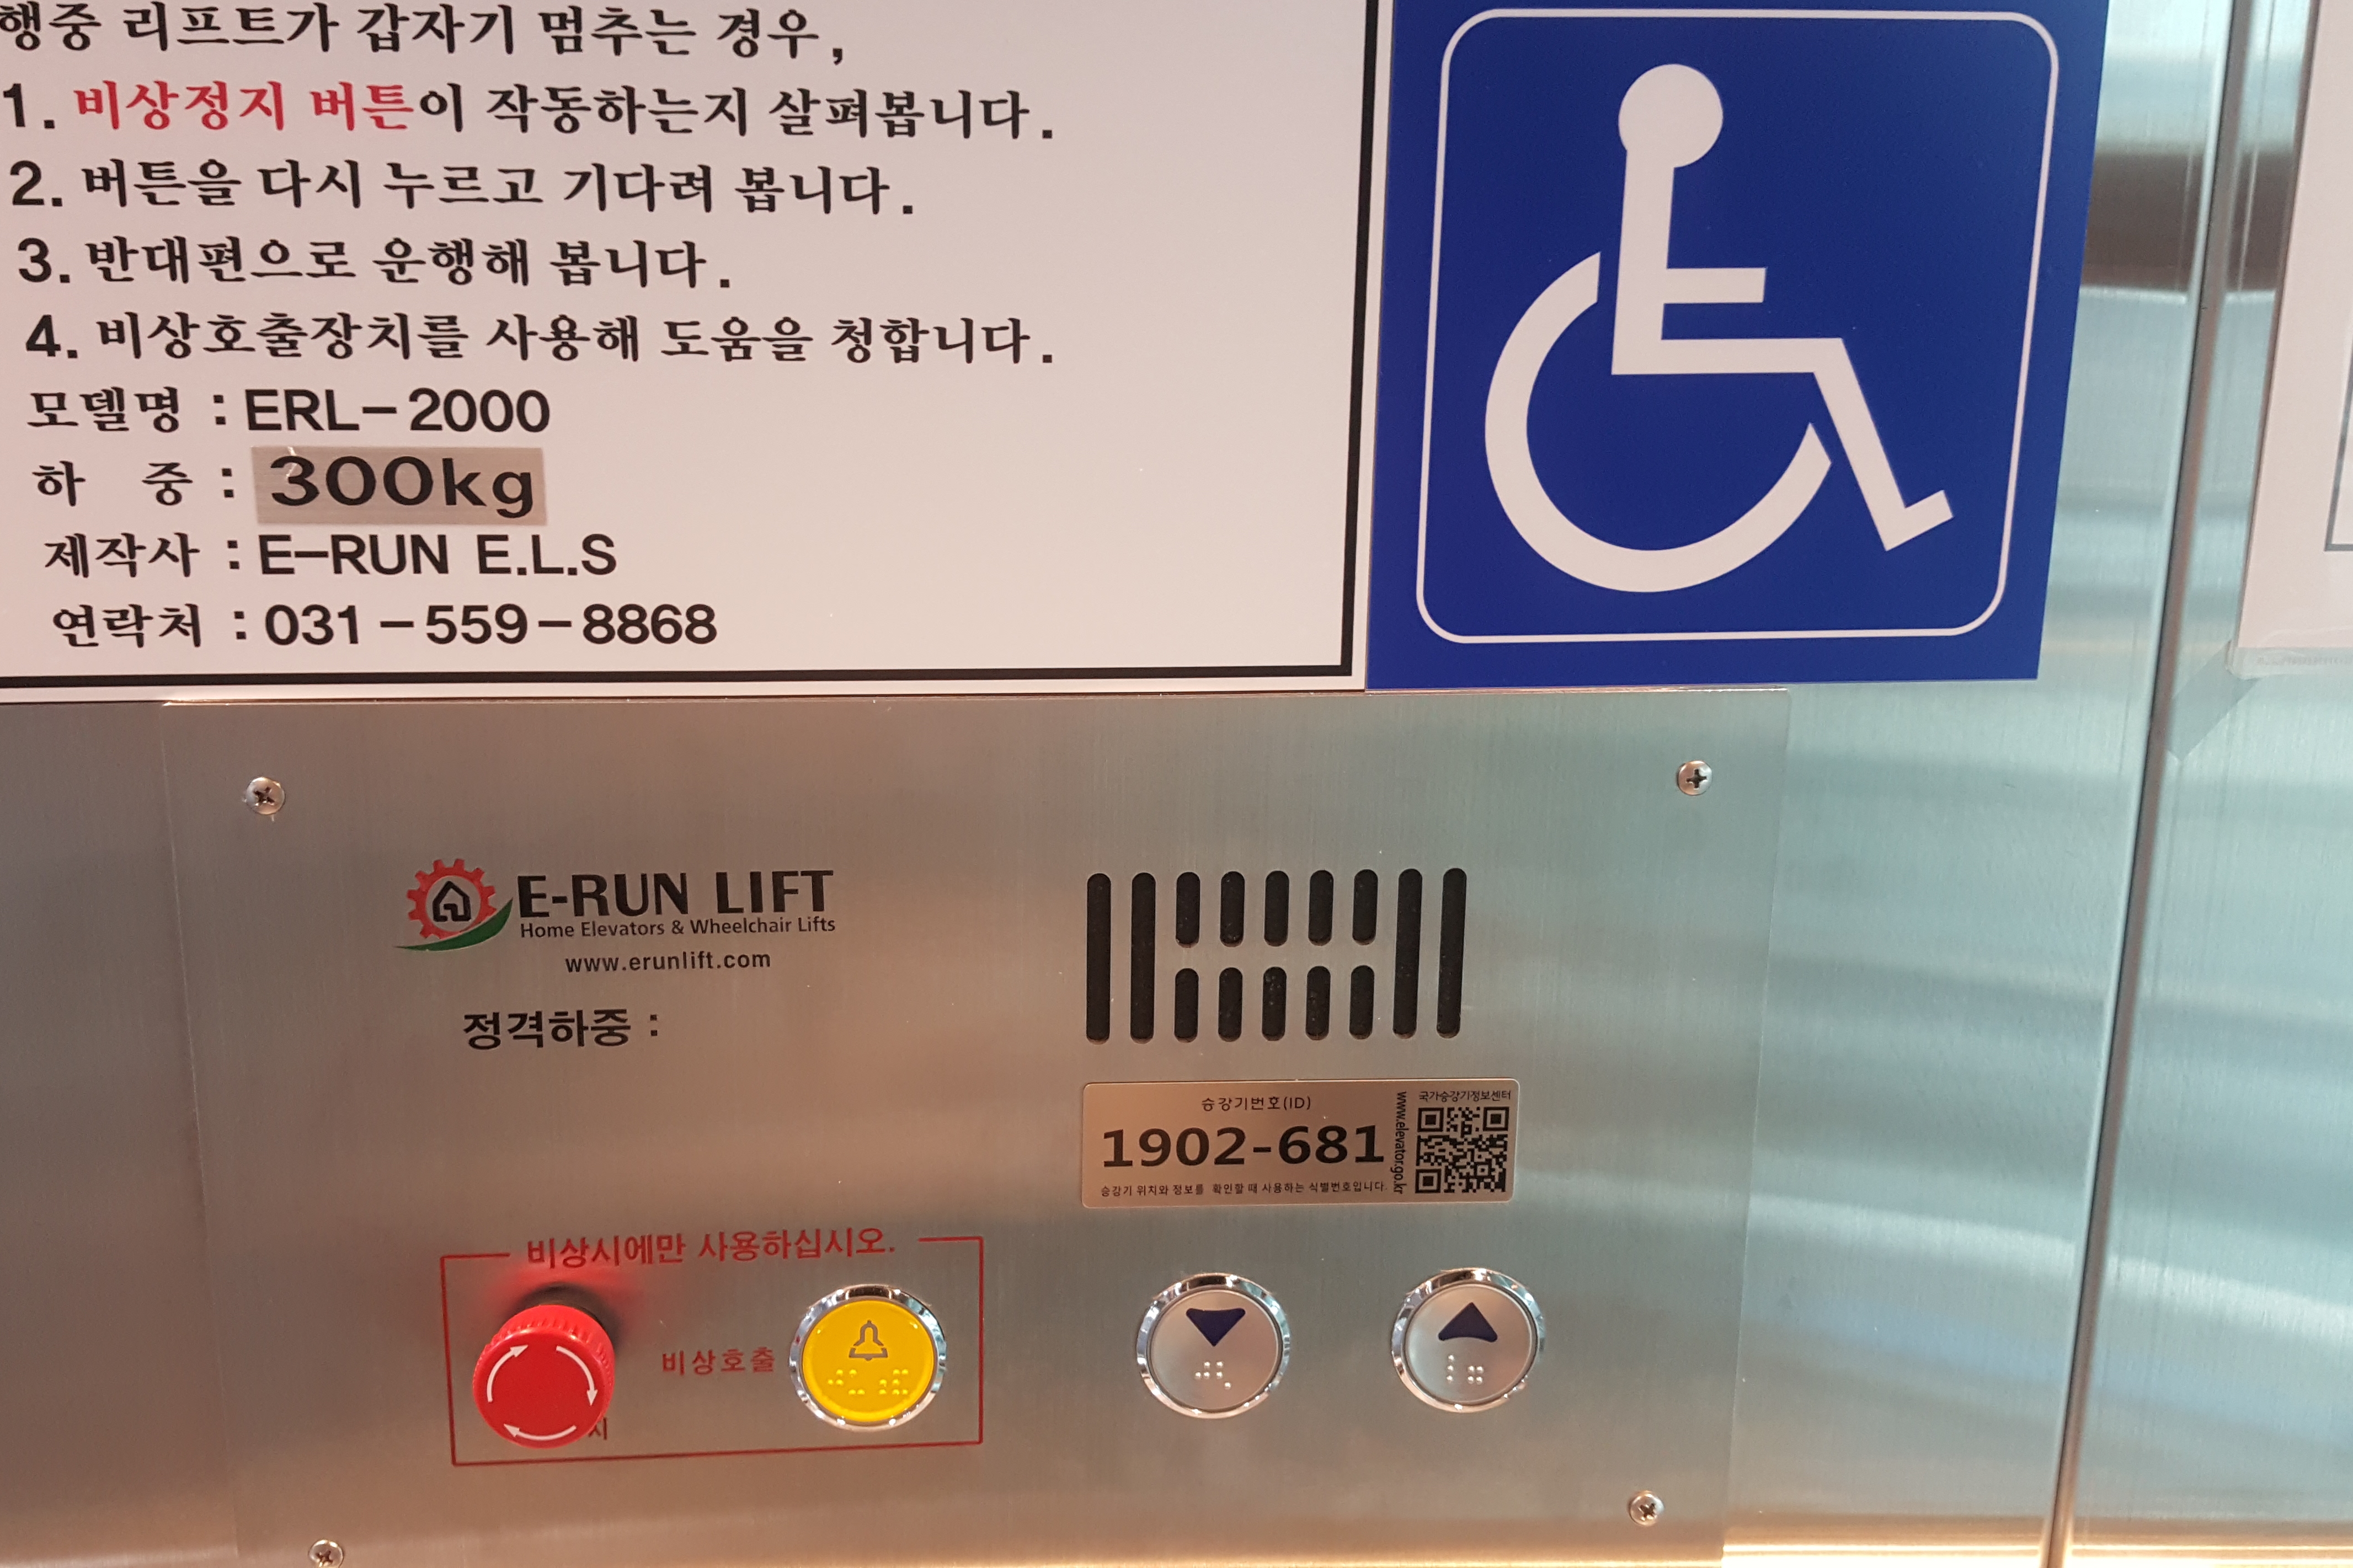 엘리베이터0 : 국립기상박물관 휠체어리프트와 휠체어리프트 비상벨